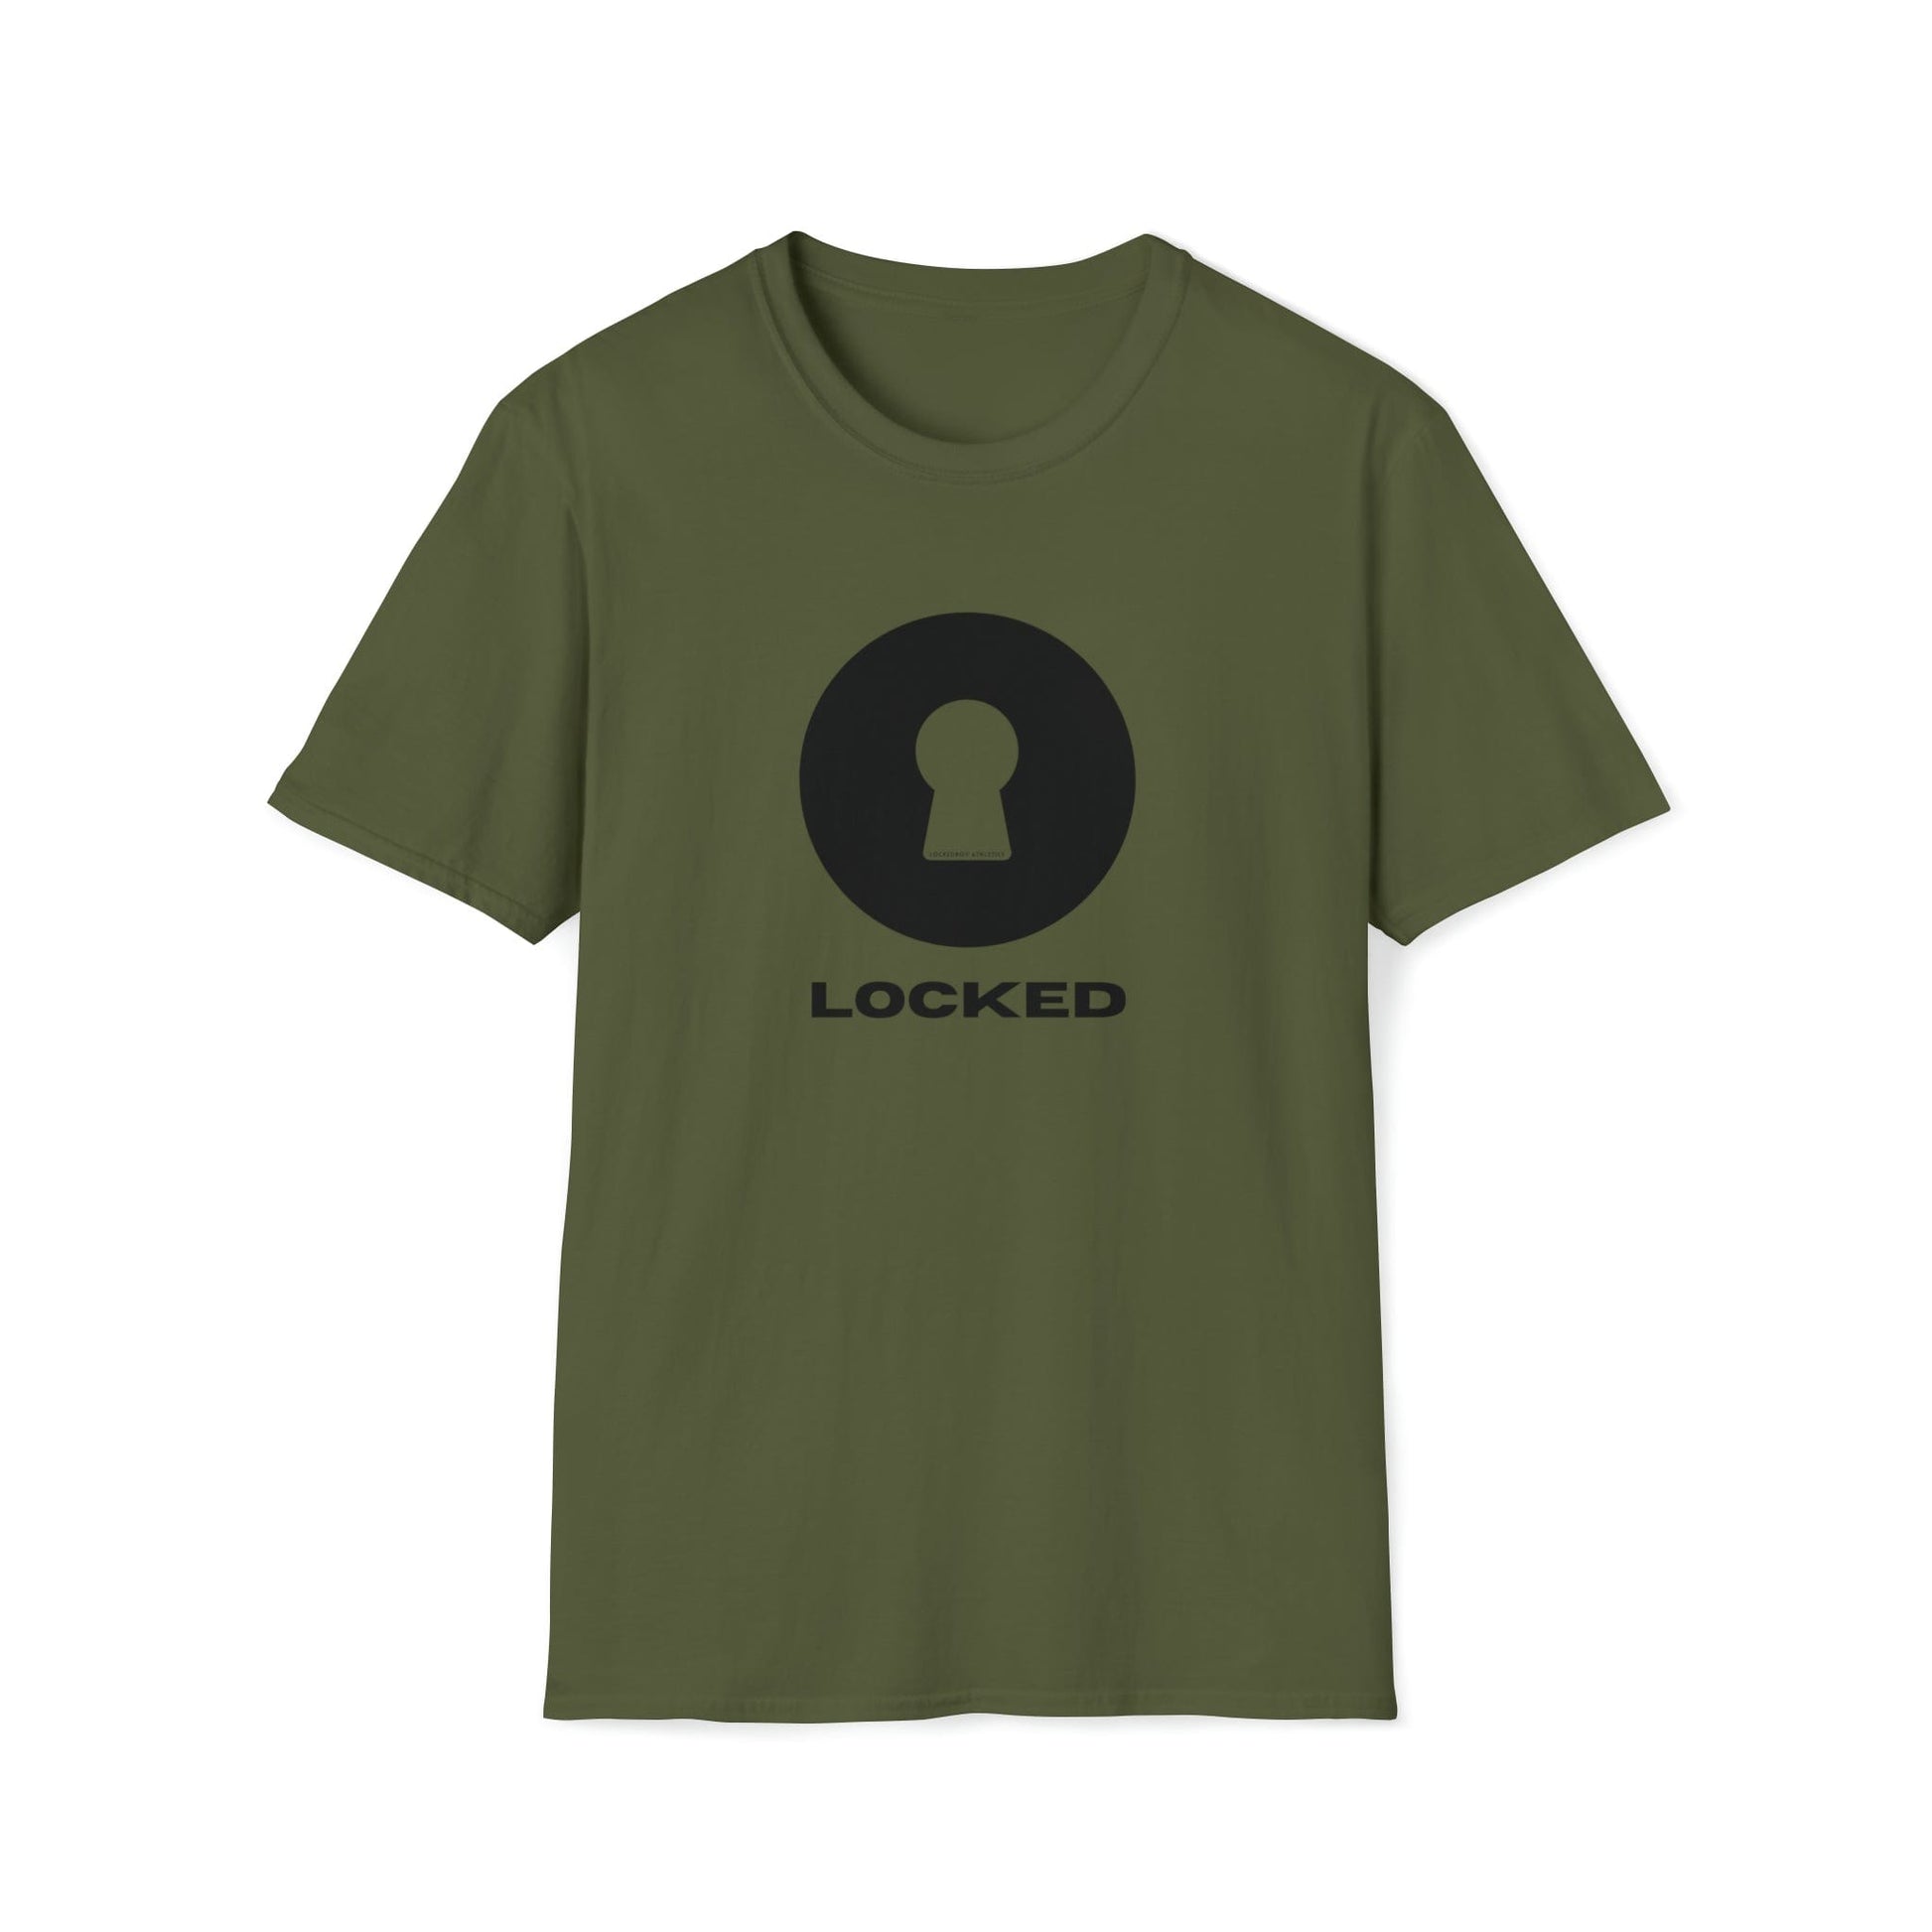 T-Shirt Military Green / S Boldly Locked - Lockedboy Athletics Chastity Tshirt LEATHERDADDY BATOR